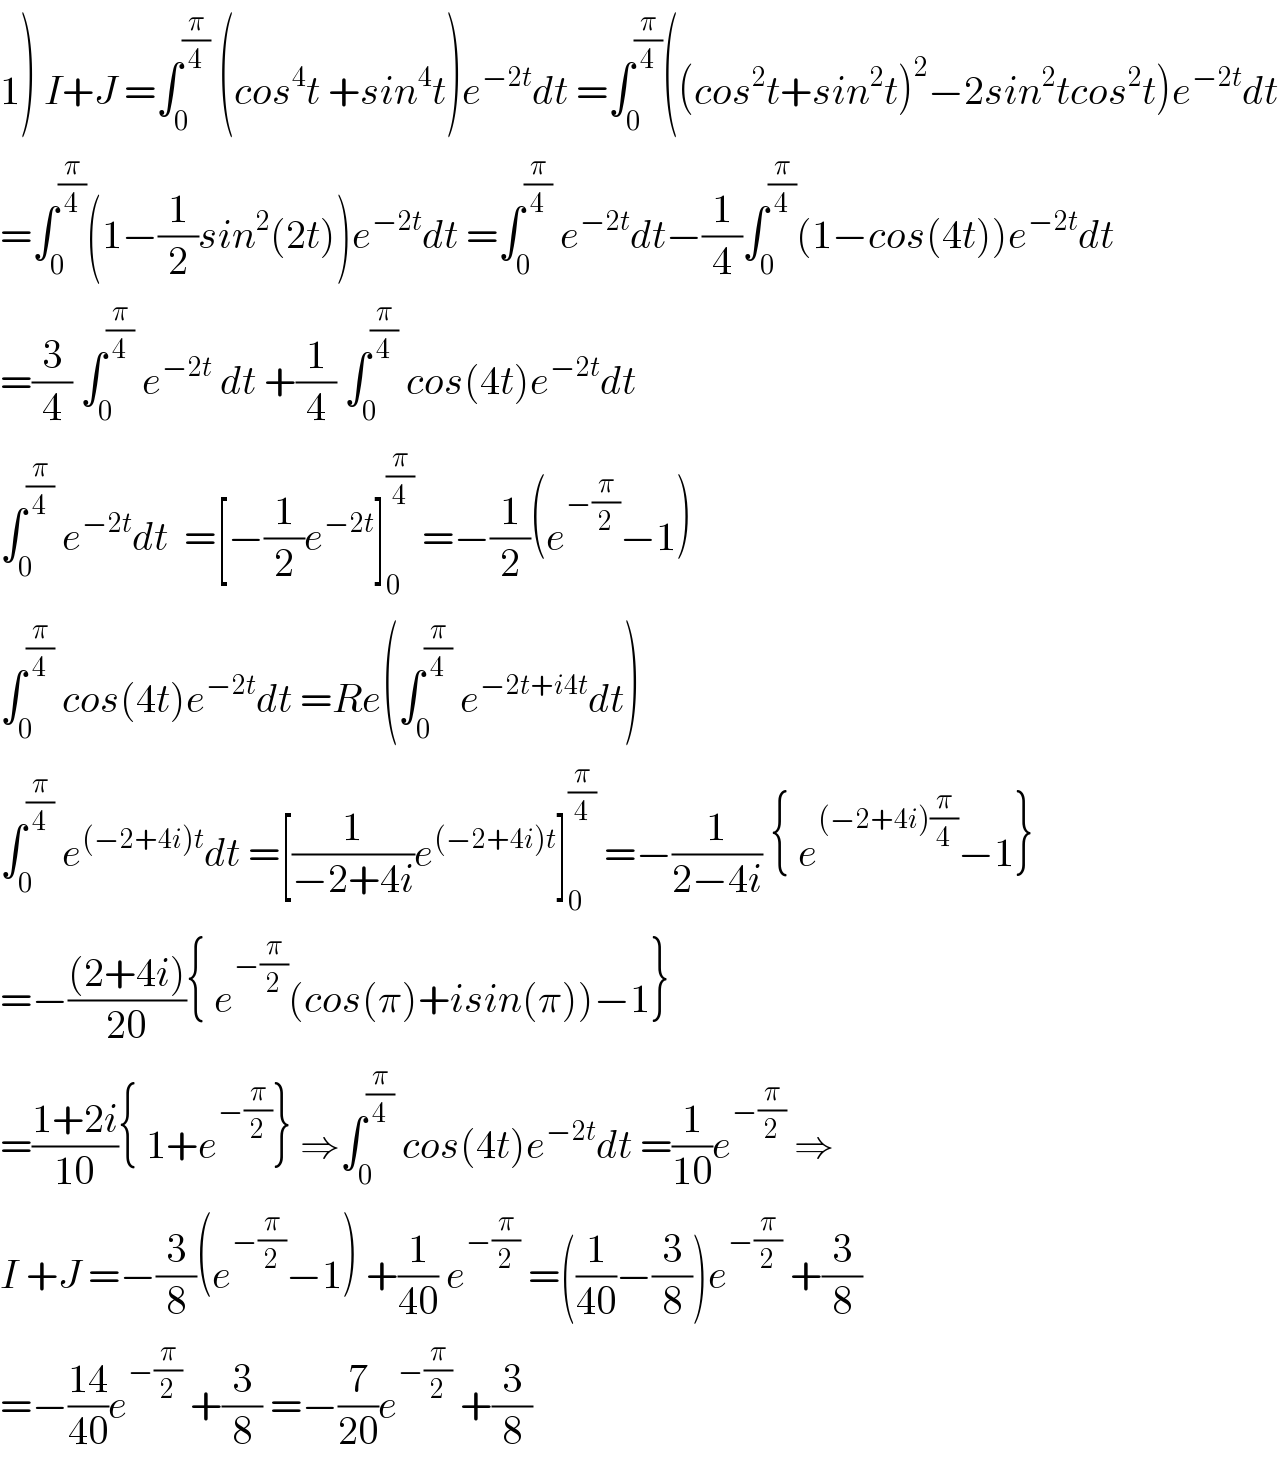 1) I+J =∫_0 ^(π/4)  (cos^4 t +sin^4 t)e^(−2t) dt =∫_0 ^(π/4) ((cos^2 t+sin^2 t)^2 −2sin^2 tcos^2 t)e^(−2t) dt  =∫_0 ^(π/4) (1−(1/2)sin^2 (2t))e^(−2t) dt =∫_0 ^(π/4)  e^(−2t) dt−(1/4)∫_0 ^(π/4) (1−cos(4t))e^(−2t) dt  =(3/4) ∫_0 ^(π/4)  e^(−2t)  dt +(1/4) ∫_0 ^(π/4)  cos(4t)e^(−2t) dt   ∫_0 ^(π/4)  e^(−2t) dt  =[−(1/2)e^(−2t) ]_0 ^(π/4)  =−(1/2)(e^(−(π/2)) −1)  ∫_0 ^(π/4)  cos(4t)e^(−2t) dt =Re(∫_0 ^(π/4)  e^(−2t+i4t) dt)  ∫_0 ^(π/4)  e^((−2+4i)t) dt =[(1/(−2+4i))e^((−2+4i)t) ]_0 ^(π/4)  =−(1/(2−4i)) { e^((−2+4i)(π/4)) −1}  =−(((2+4i))/(20)){ e^(−(π/2)) (cos(π)+isin(π))−1}  =((1+2i)/(10)){ 1+e^(−(π/2)) } ⇒∫_0 ^(π/4)  cos(4t)e^(−2t) dt =(1/(10))e^(−(π/2))  ⇒  I +J =−(3/8)(e^(−(π/2)) −1) +(1/(40)) e^(−(π/2))  =((1/(40))−(3/8))e^(−(π/2))  +(3/8)  =−((14)/(40))e^(−(π/2))  +(3/8) =−(7/(20))e^(−(π/2))  +(3/8)  